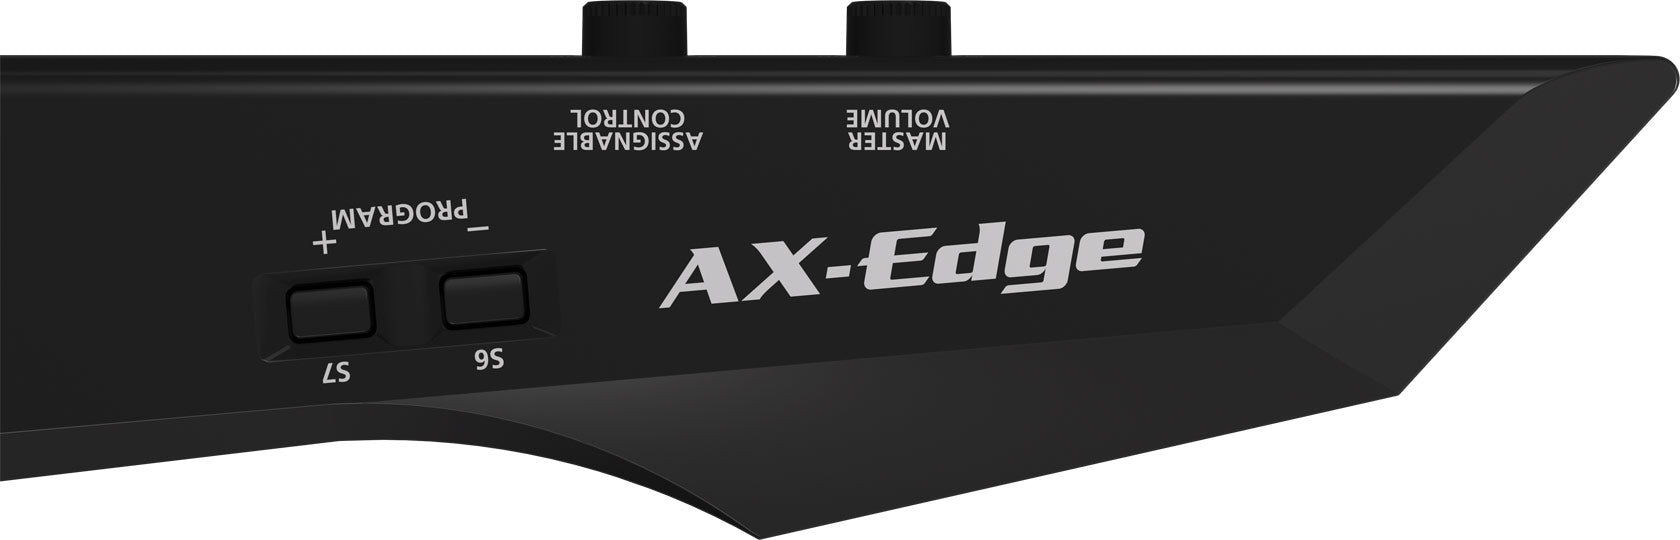 Roland AX-Edge 49-Key Keytar Synthesizer with FREE Shipping - Black (AXEdge AX Edge), ROLAND, SYNTHESIZER, roland-synthesizer-axedge-b, ZOSO MUSIC SDN BHD